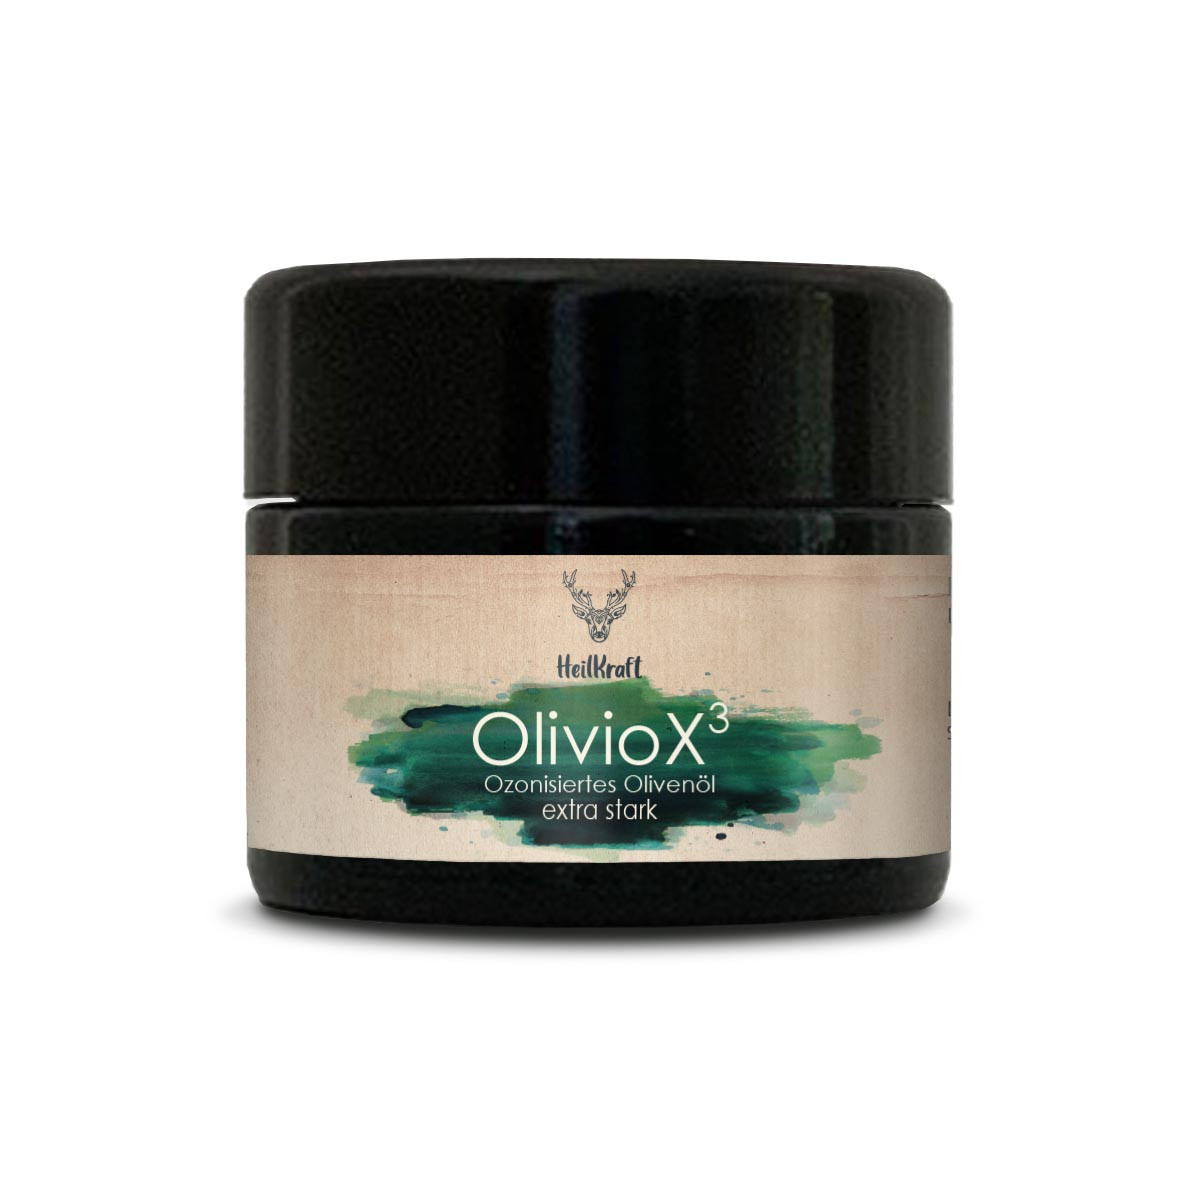 Heilkraft OlivioX - Extra stark ozonisiertes Olivenöl - 30 Milliliter